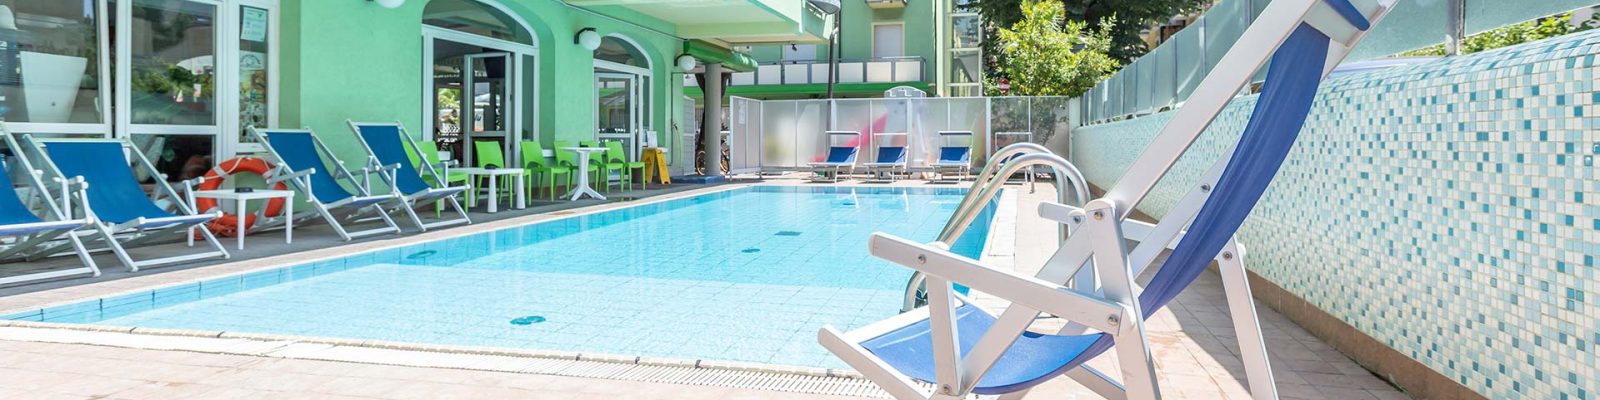 Residence eurogarden con piscina aperta da maggio